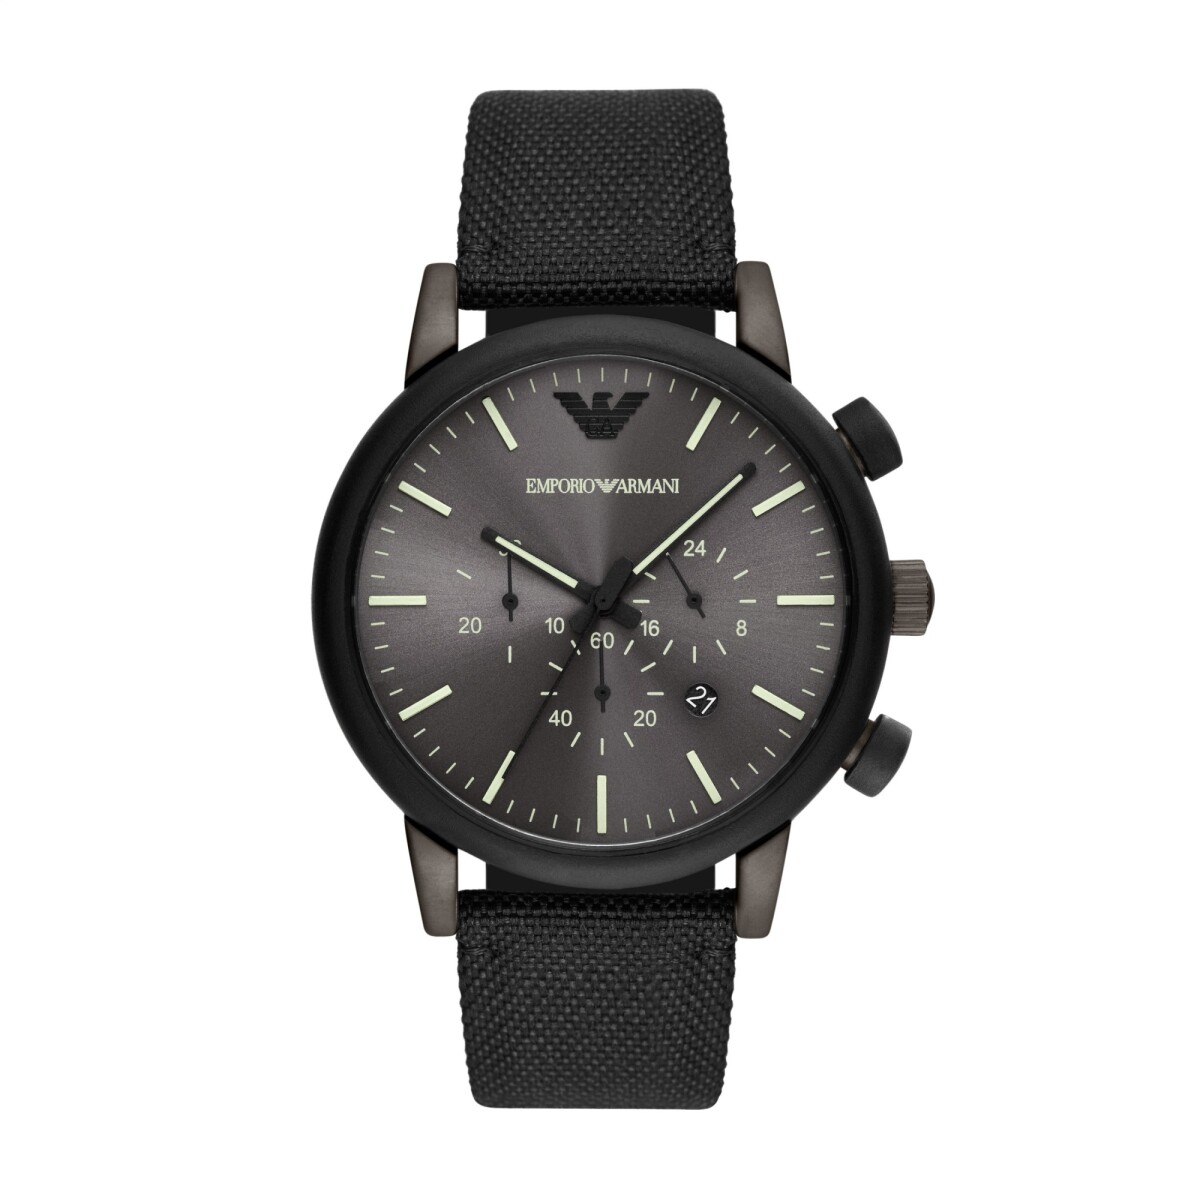 Reloj Emporio Armani Fashion Cuero Negro 